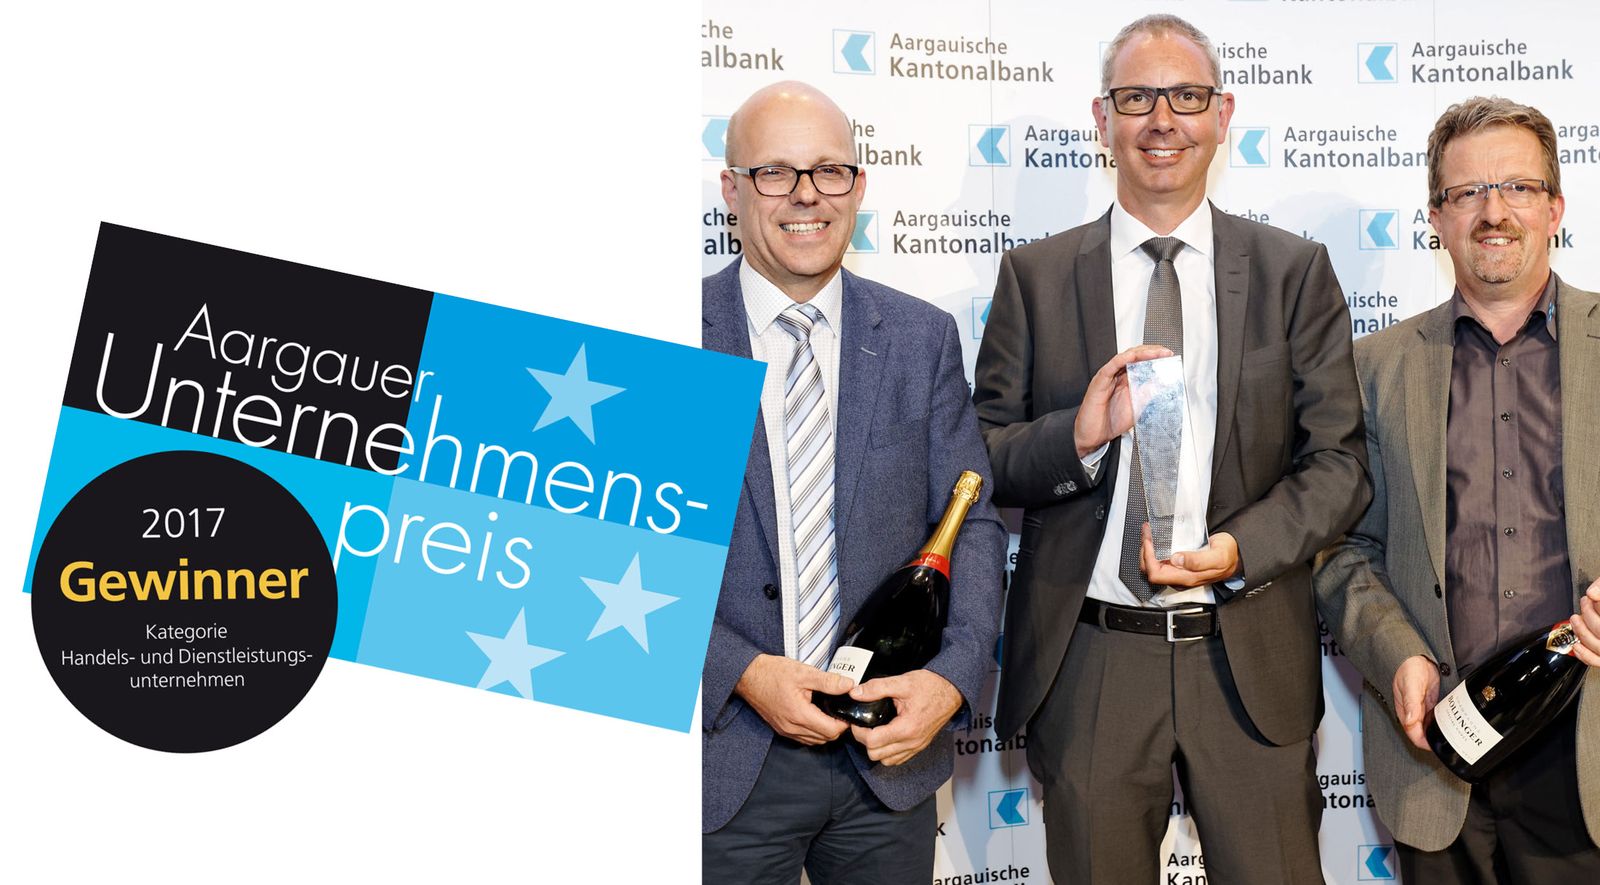 #Throwback: Publicare gewinnt den Aargauer Unternehmenspreis 2017